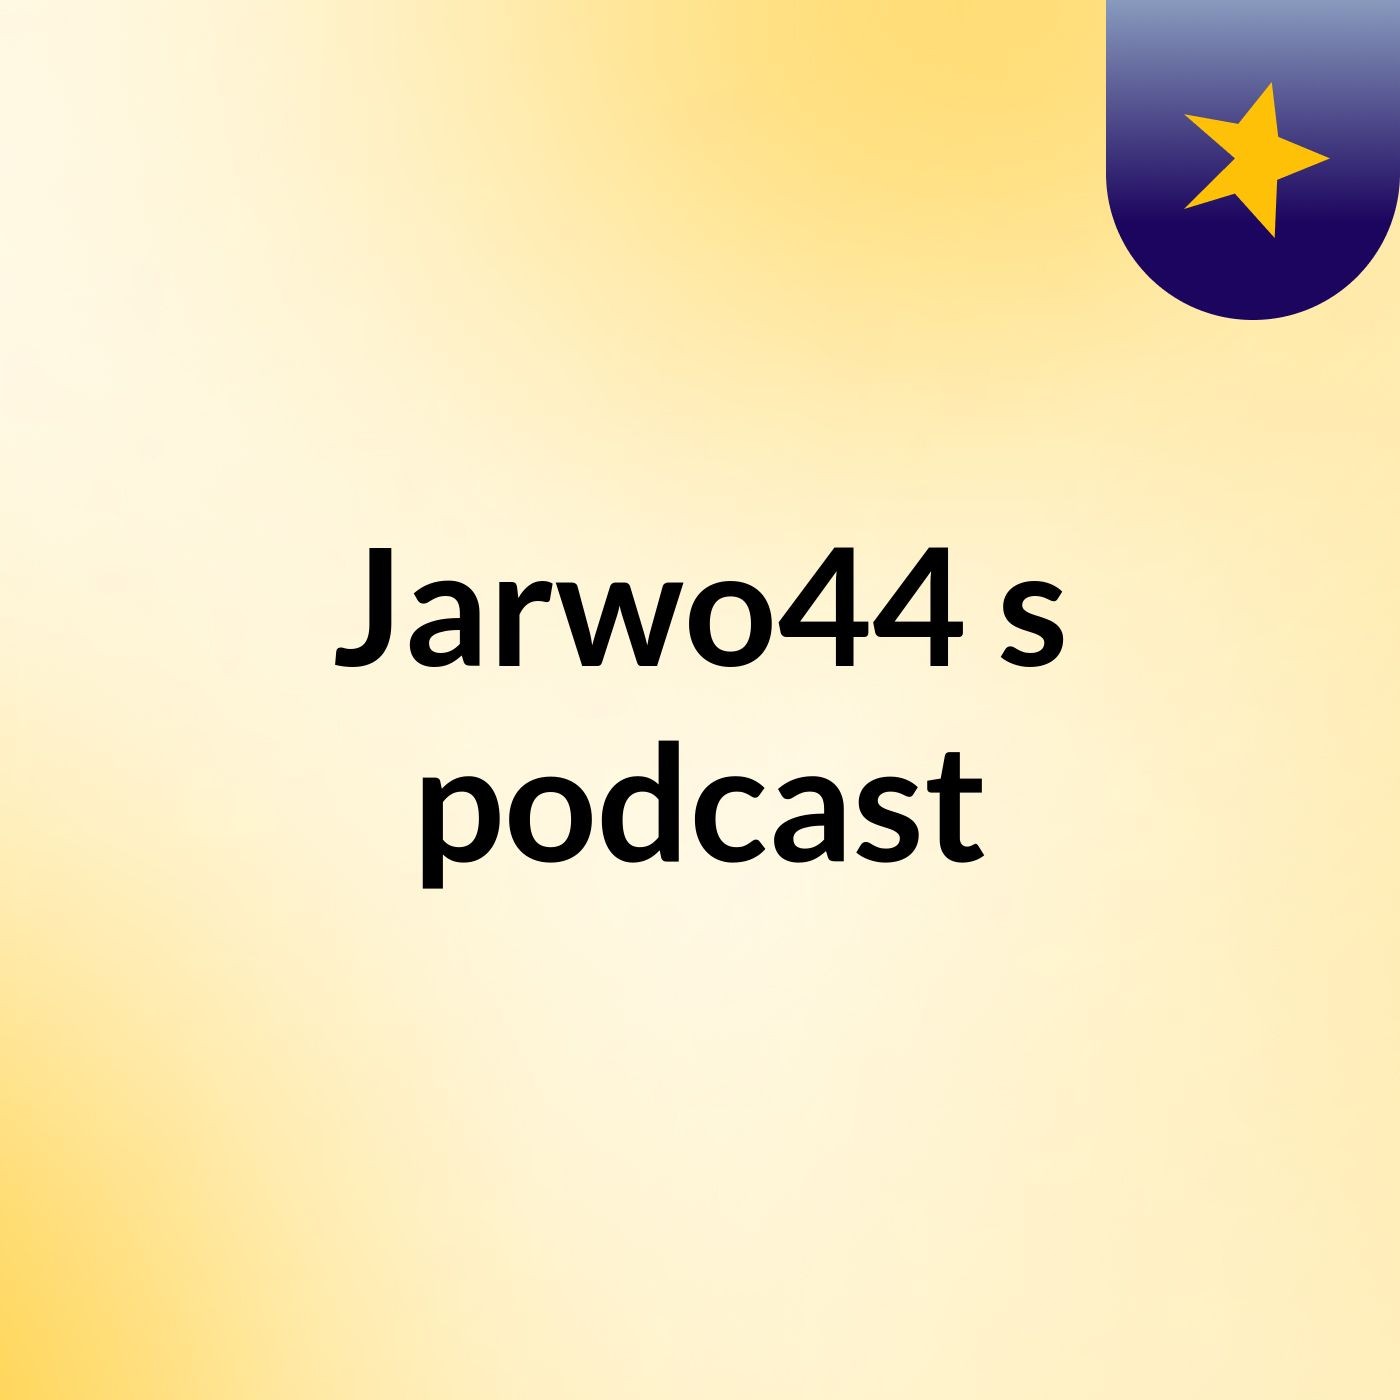 Episode 4 - Jarwo44's podcast